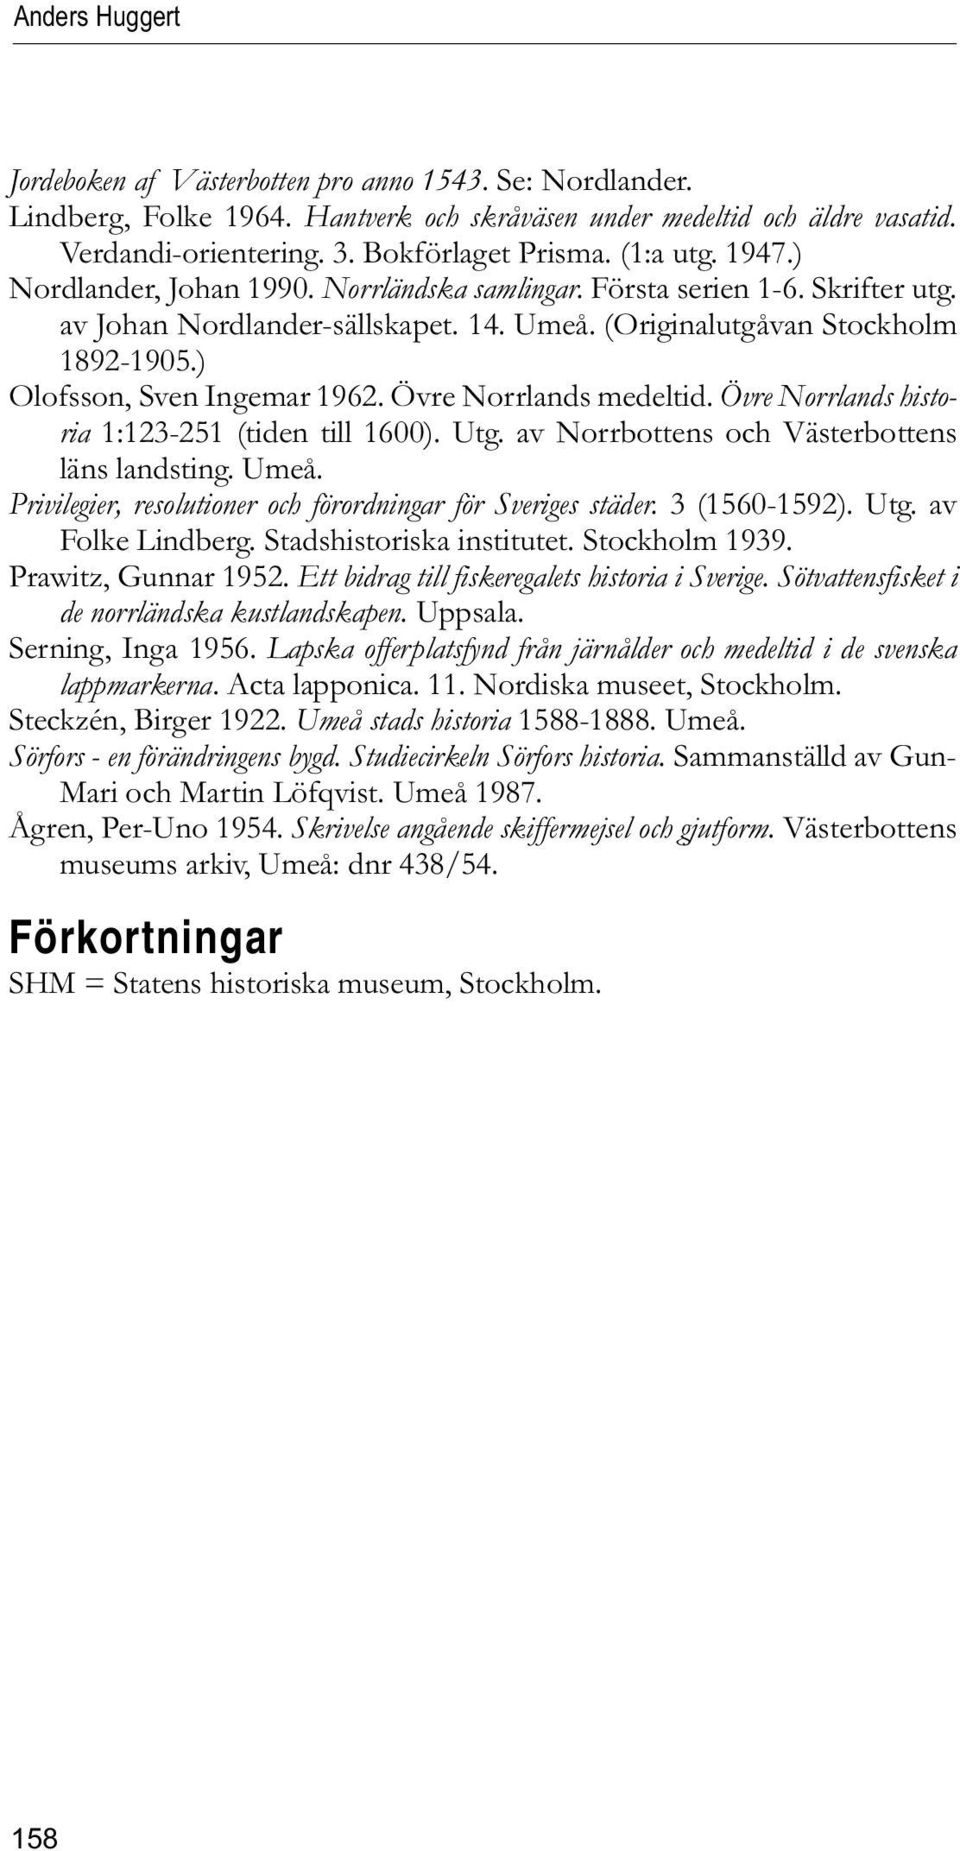 ) Olofsson, Sven Ingemar 1962. Övre Norrlands medeltid. Övre Norrlands historia 1:123-251 (tiden till 1600). Utg. av Norrbottens och Västerbottens läns landsting. Umeå.